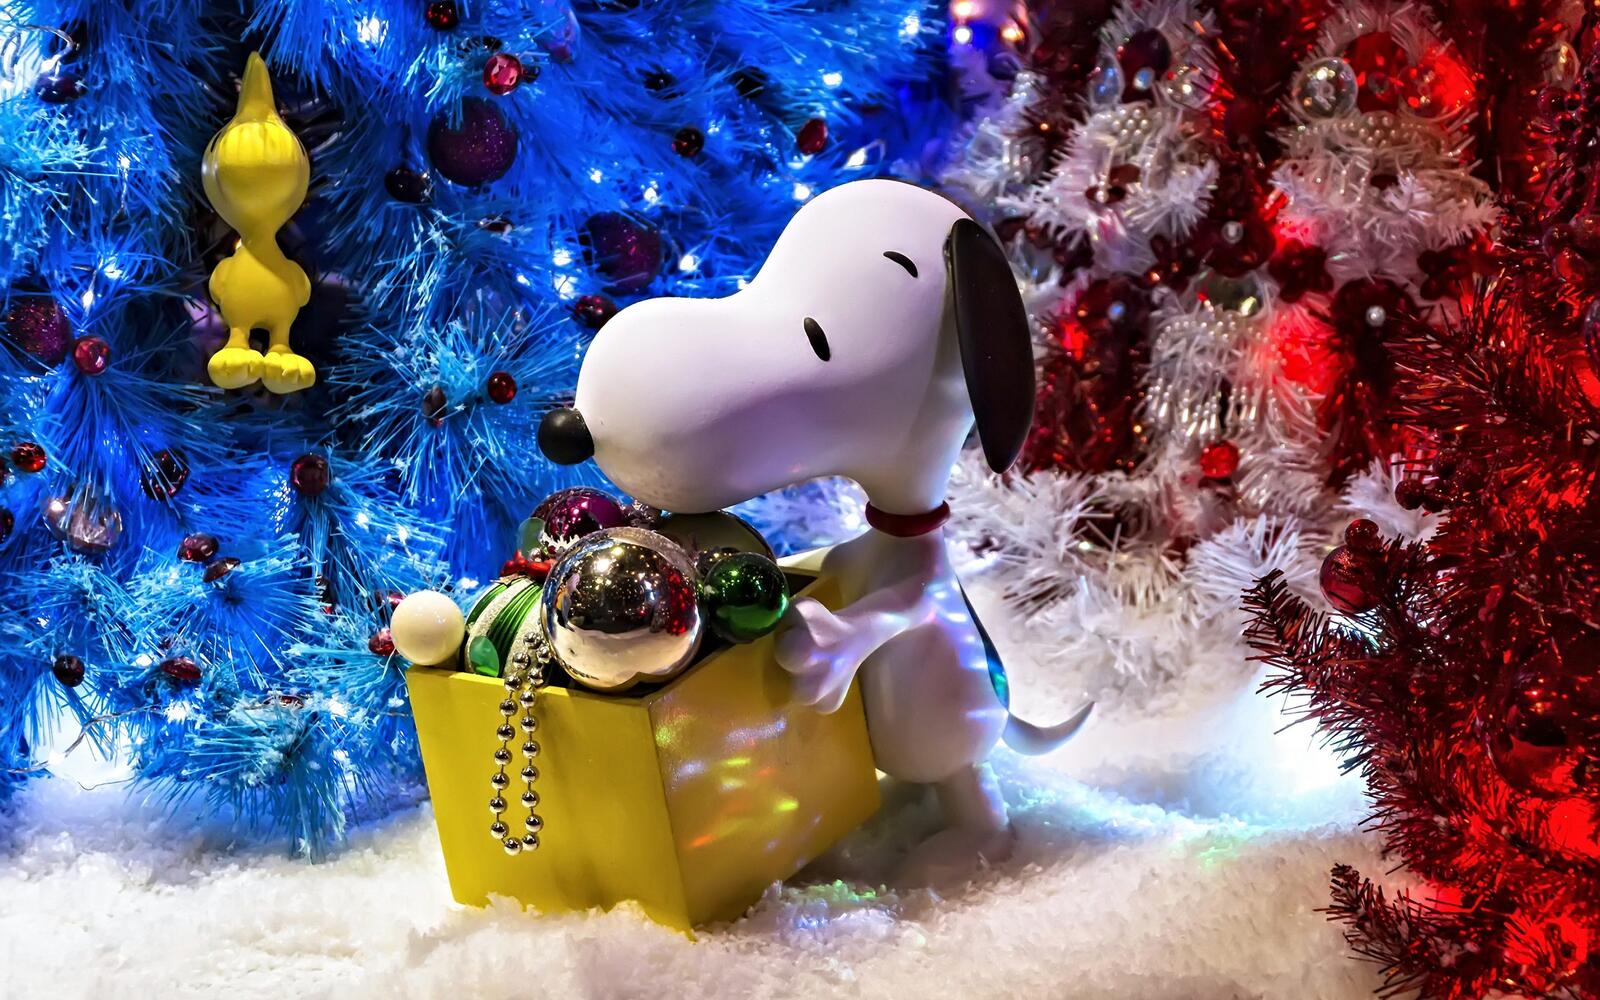 Обои новогодние игрушки рождественская елка атмосфера праздника на рабочий стол